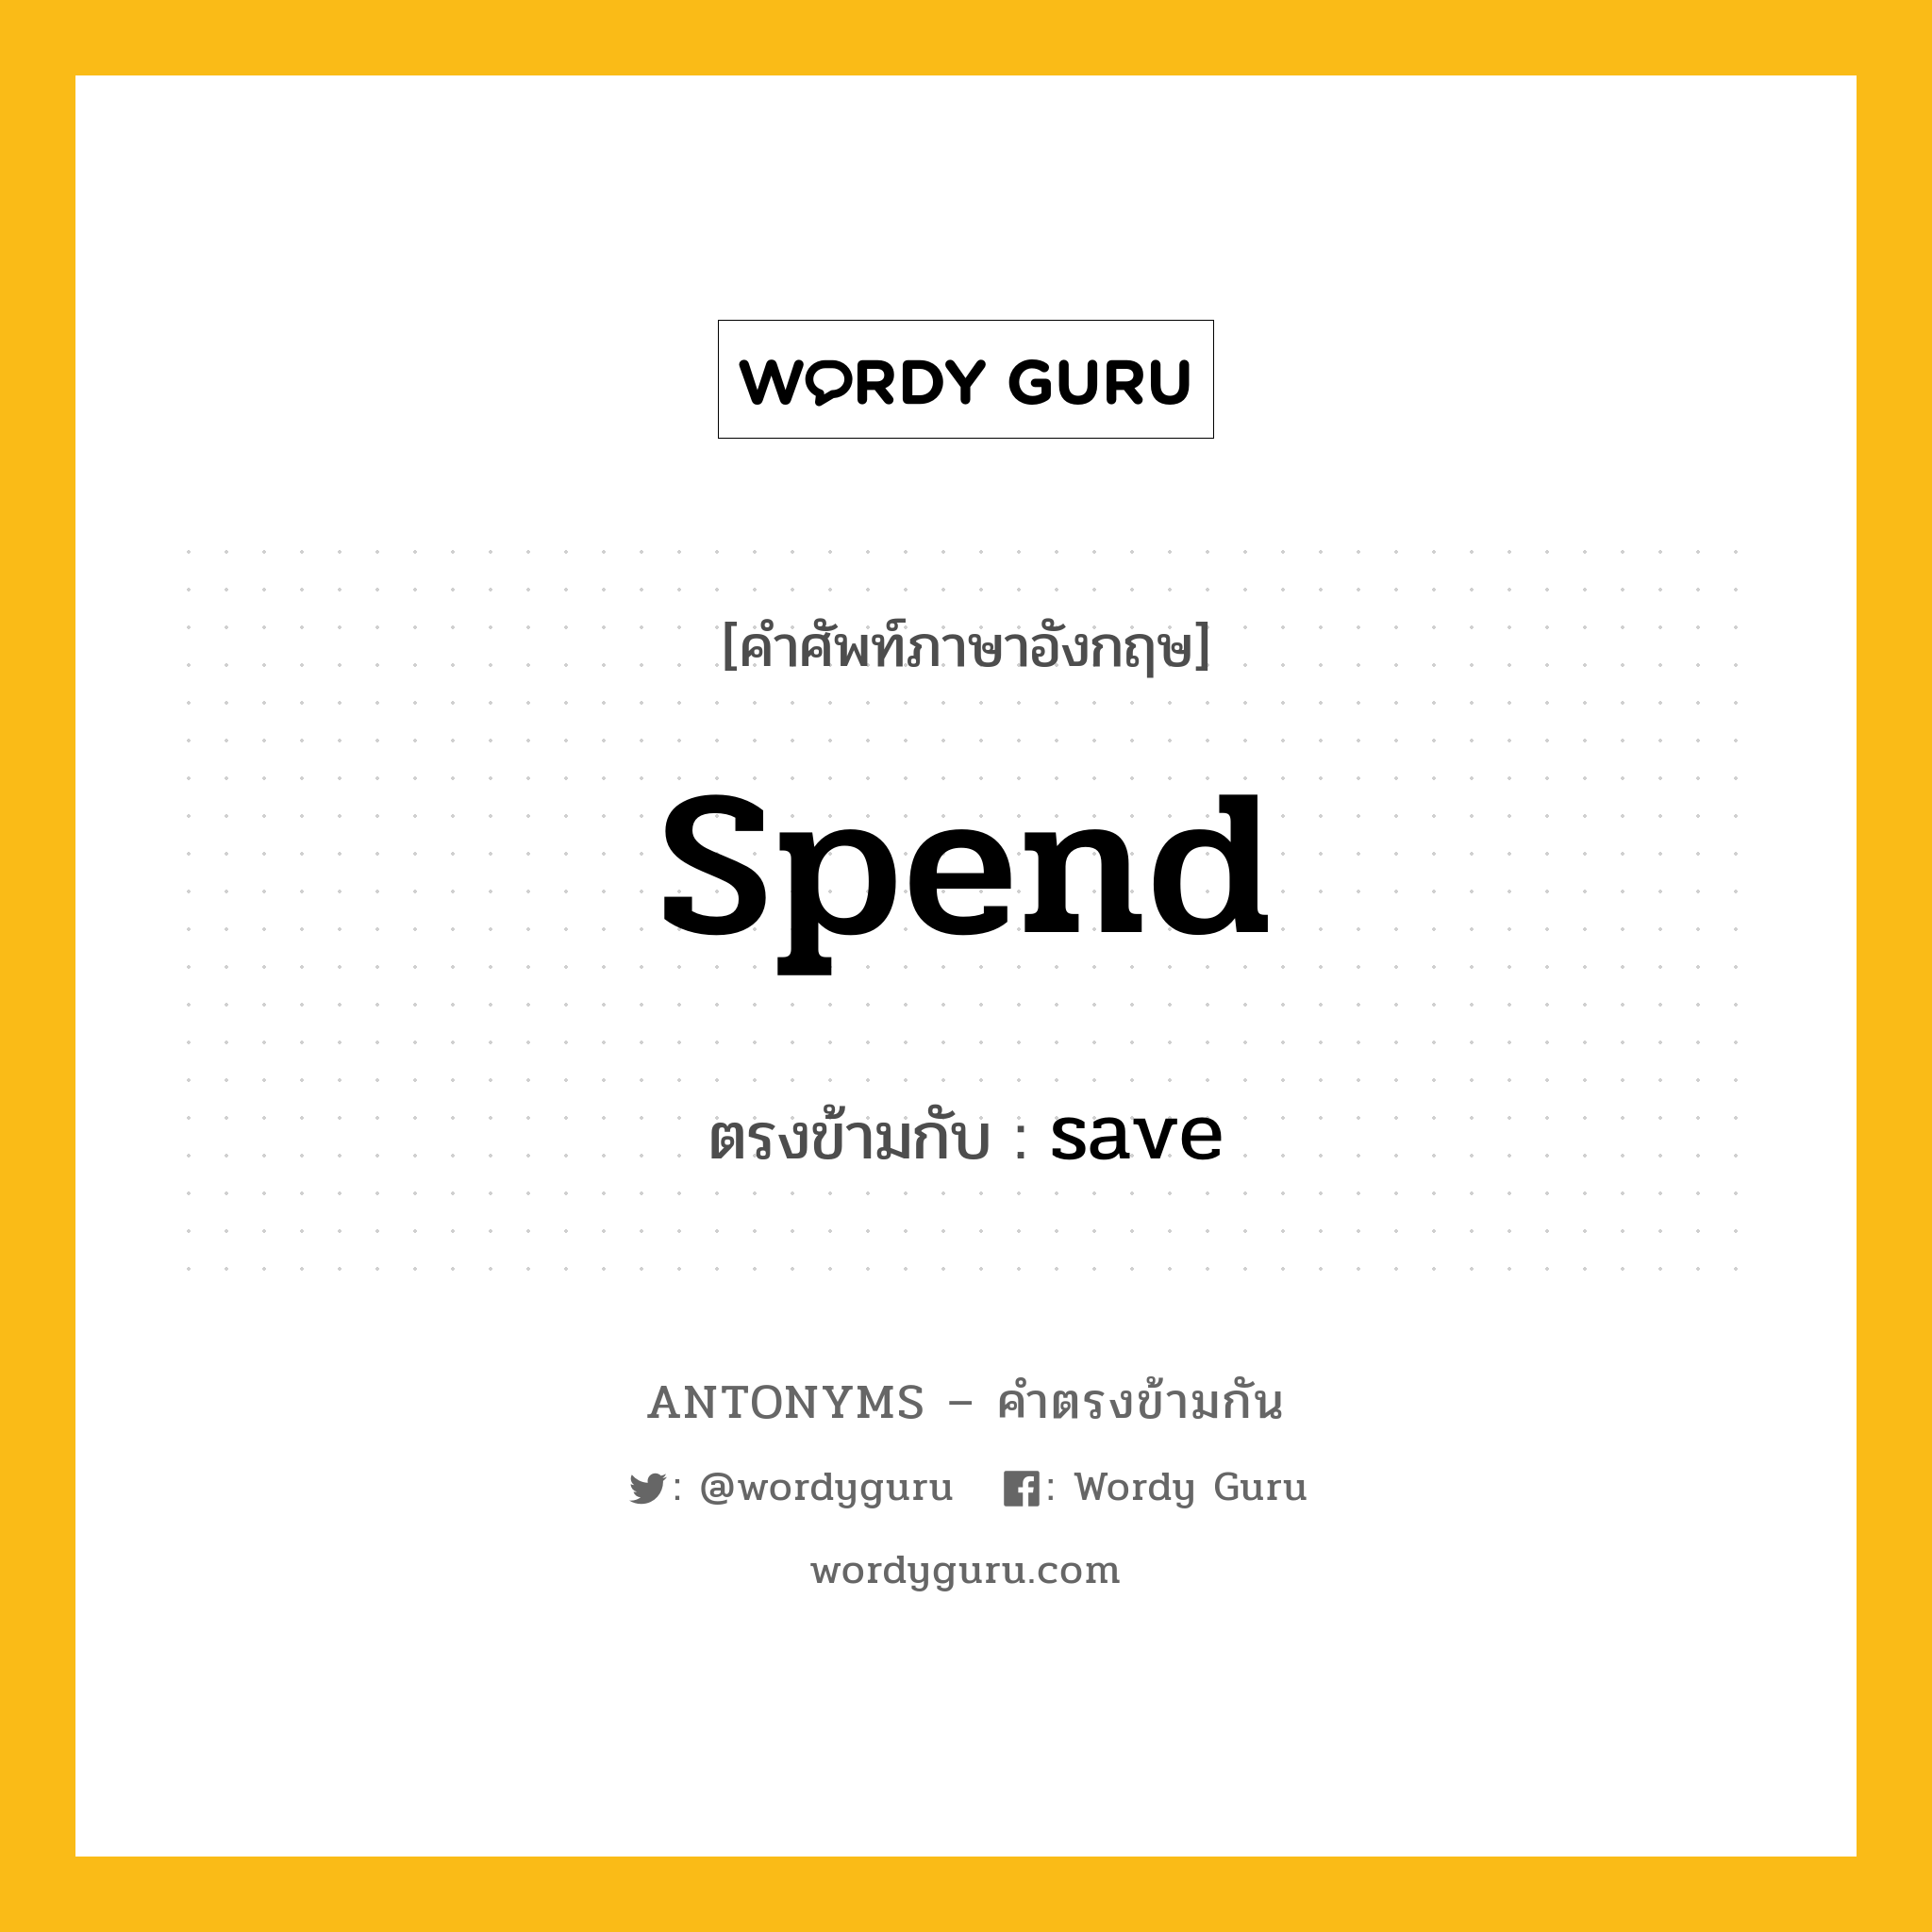 spend เป็นคำตรงข้ามกับคำไหนบ้าง?, คำศัพท์ภาษาอังกฤษ spend ตรงข้ามกับ save หมวด save